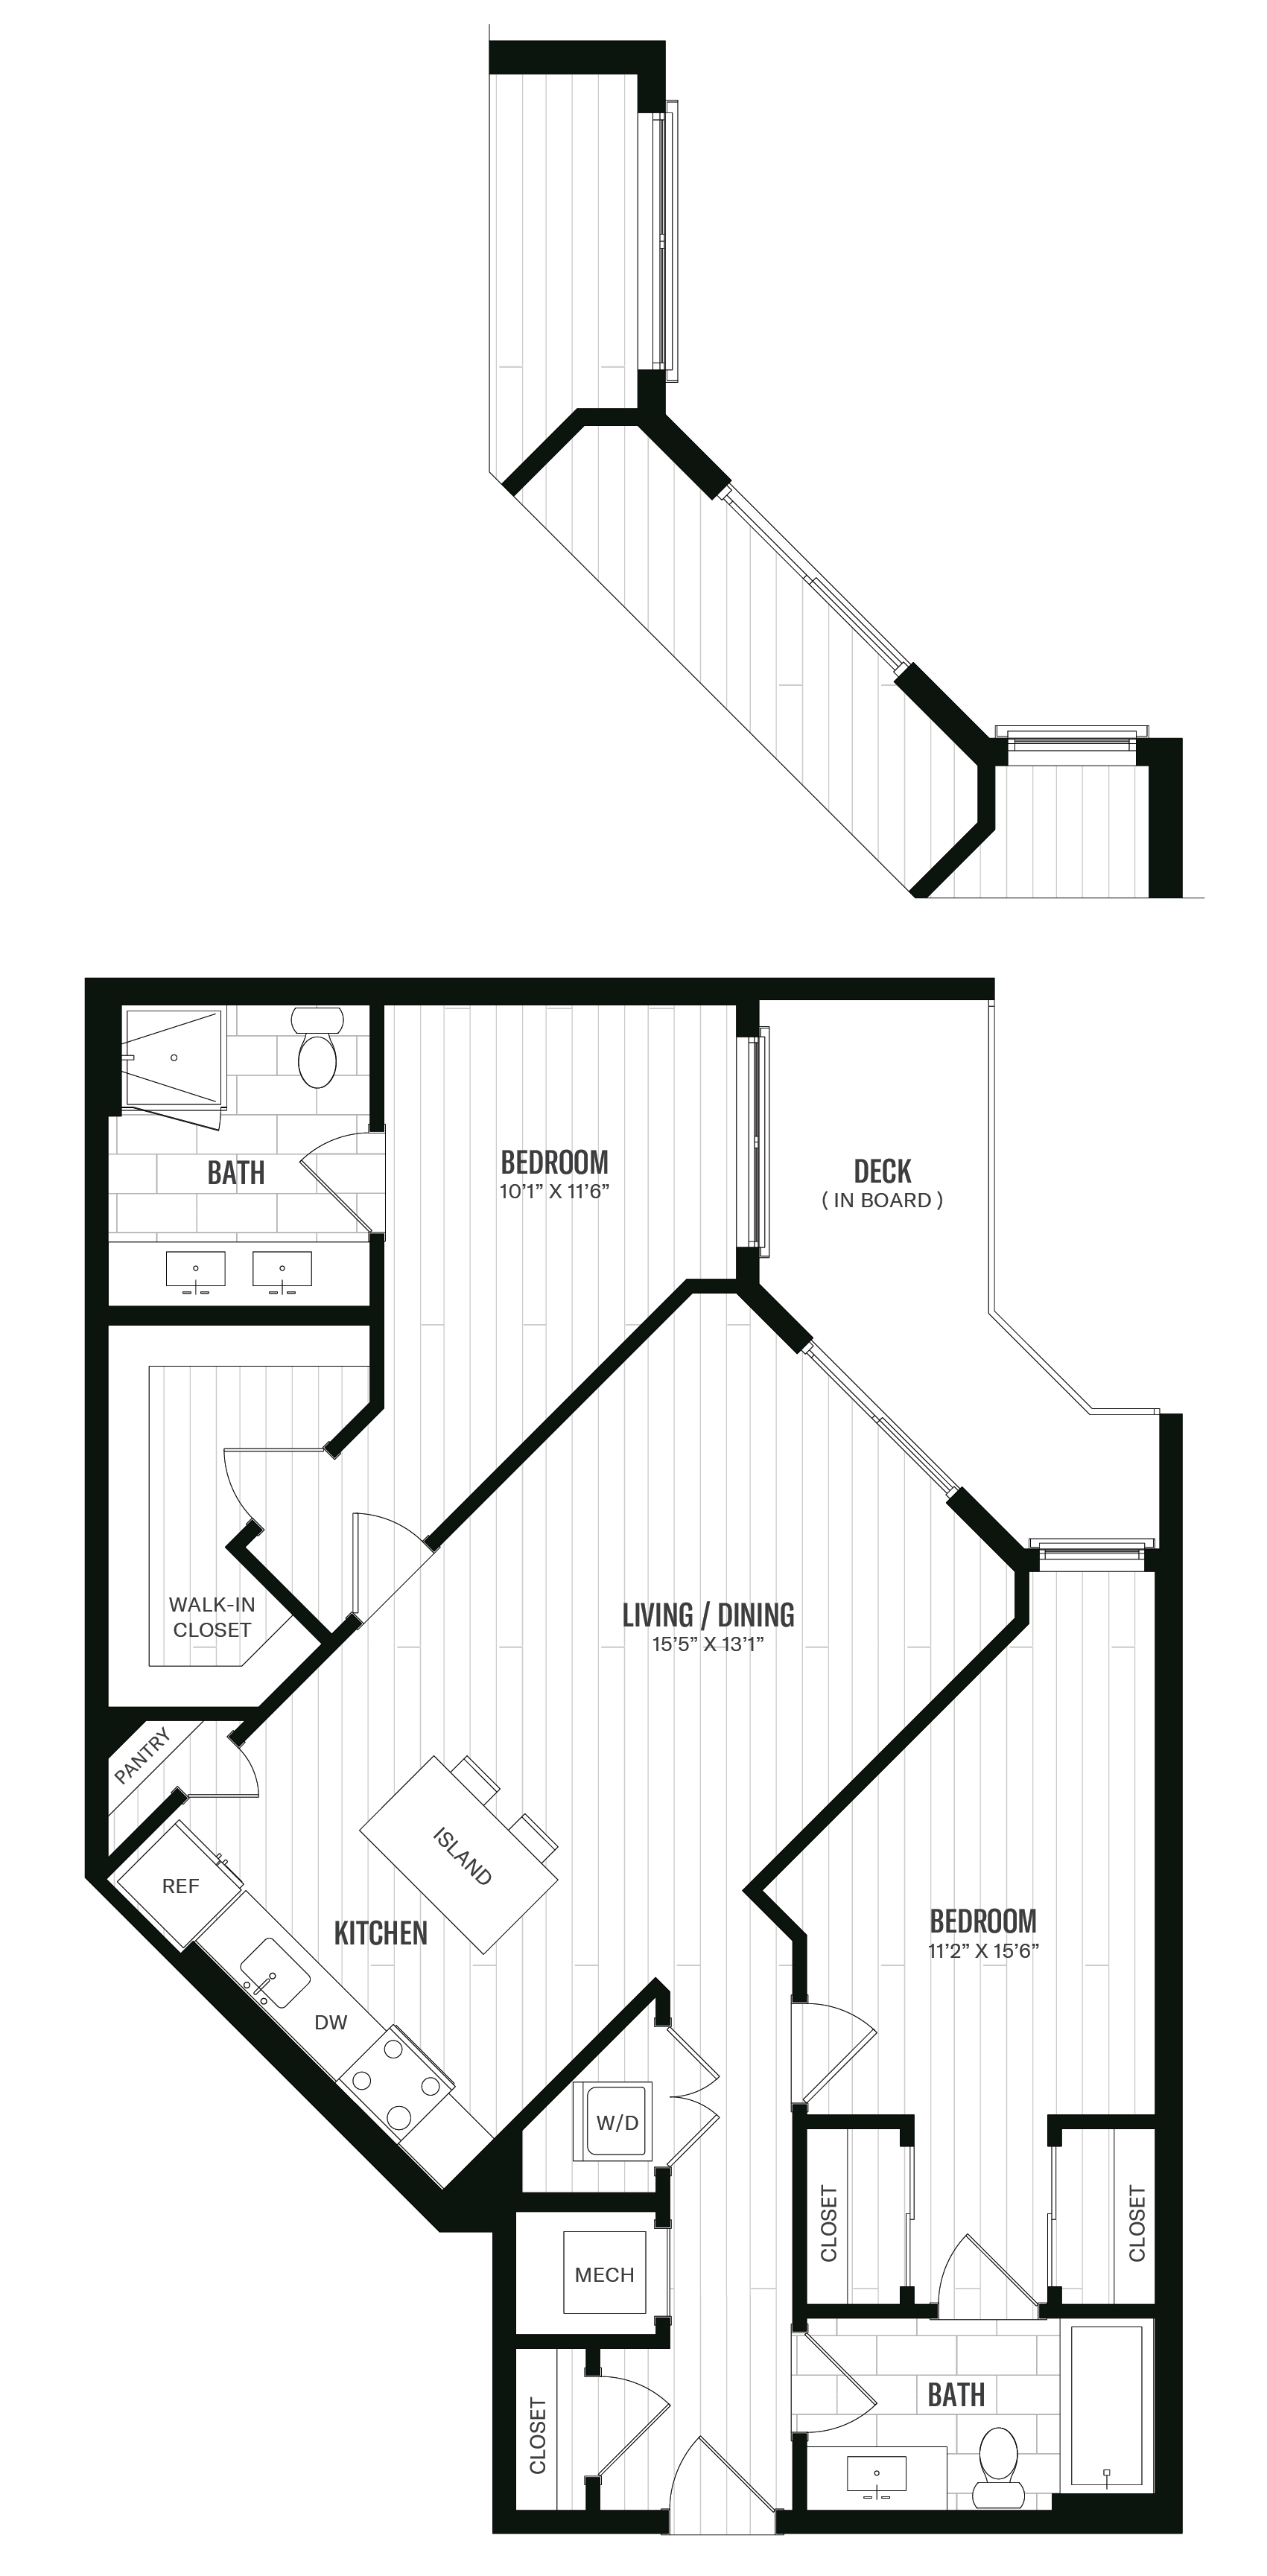 Floorplan image of unit 325